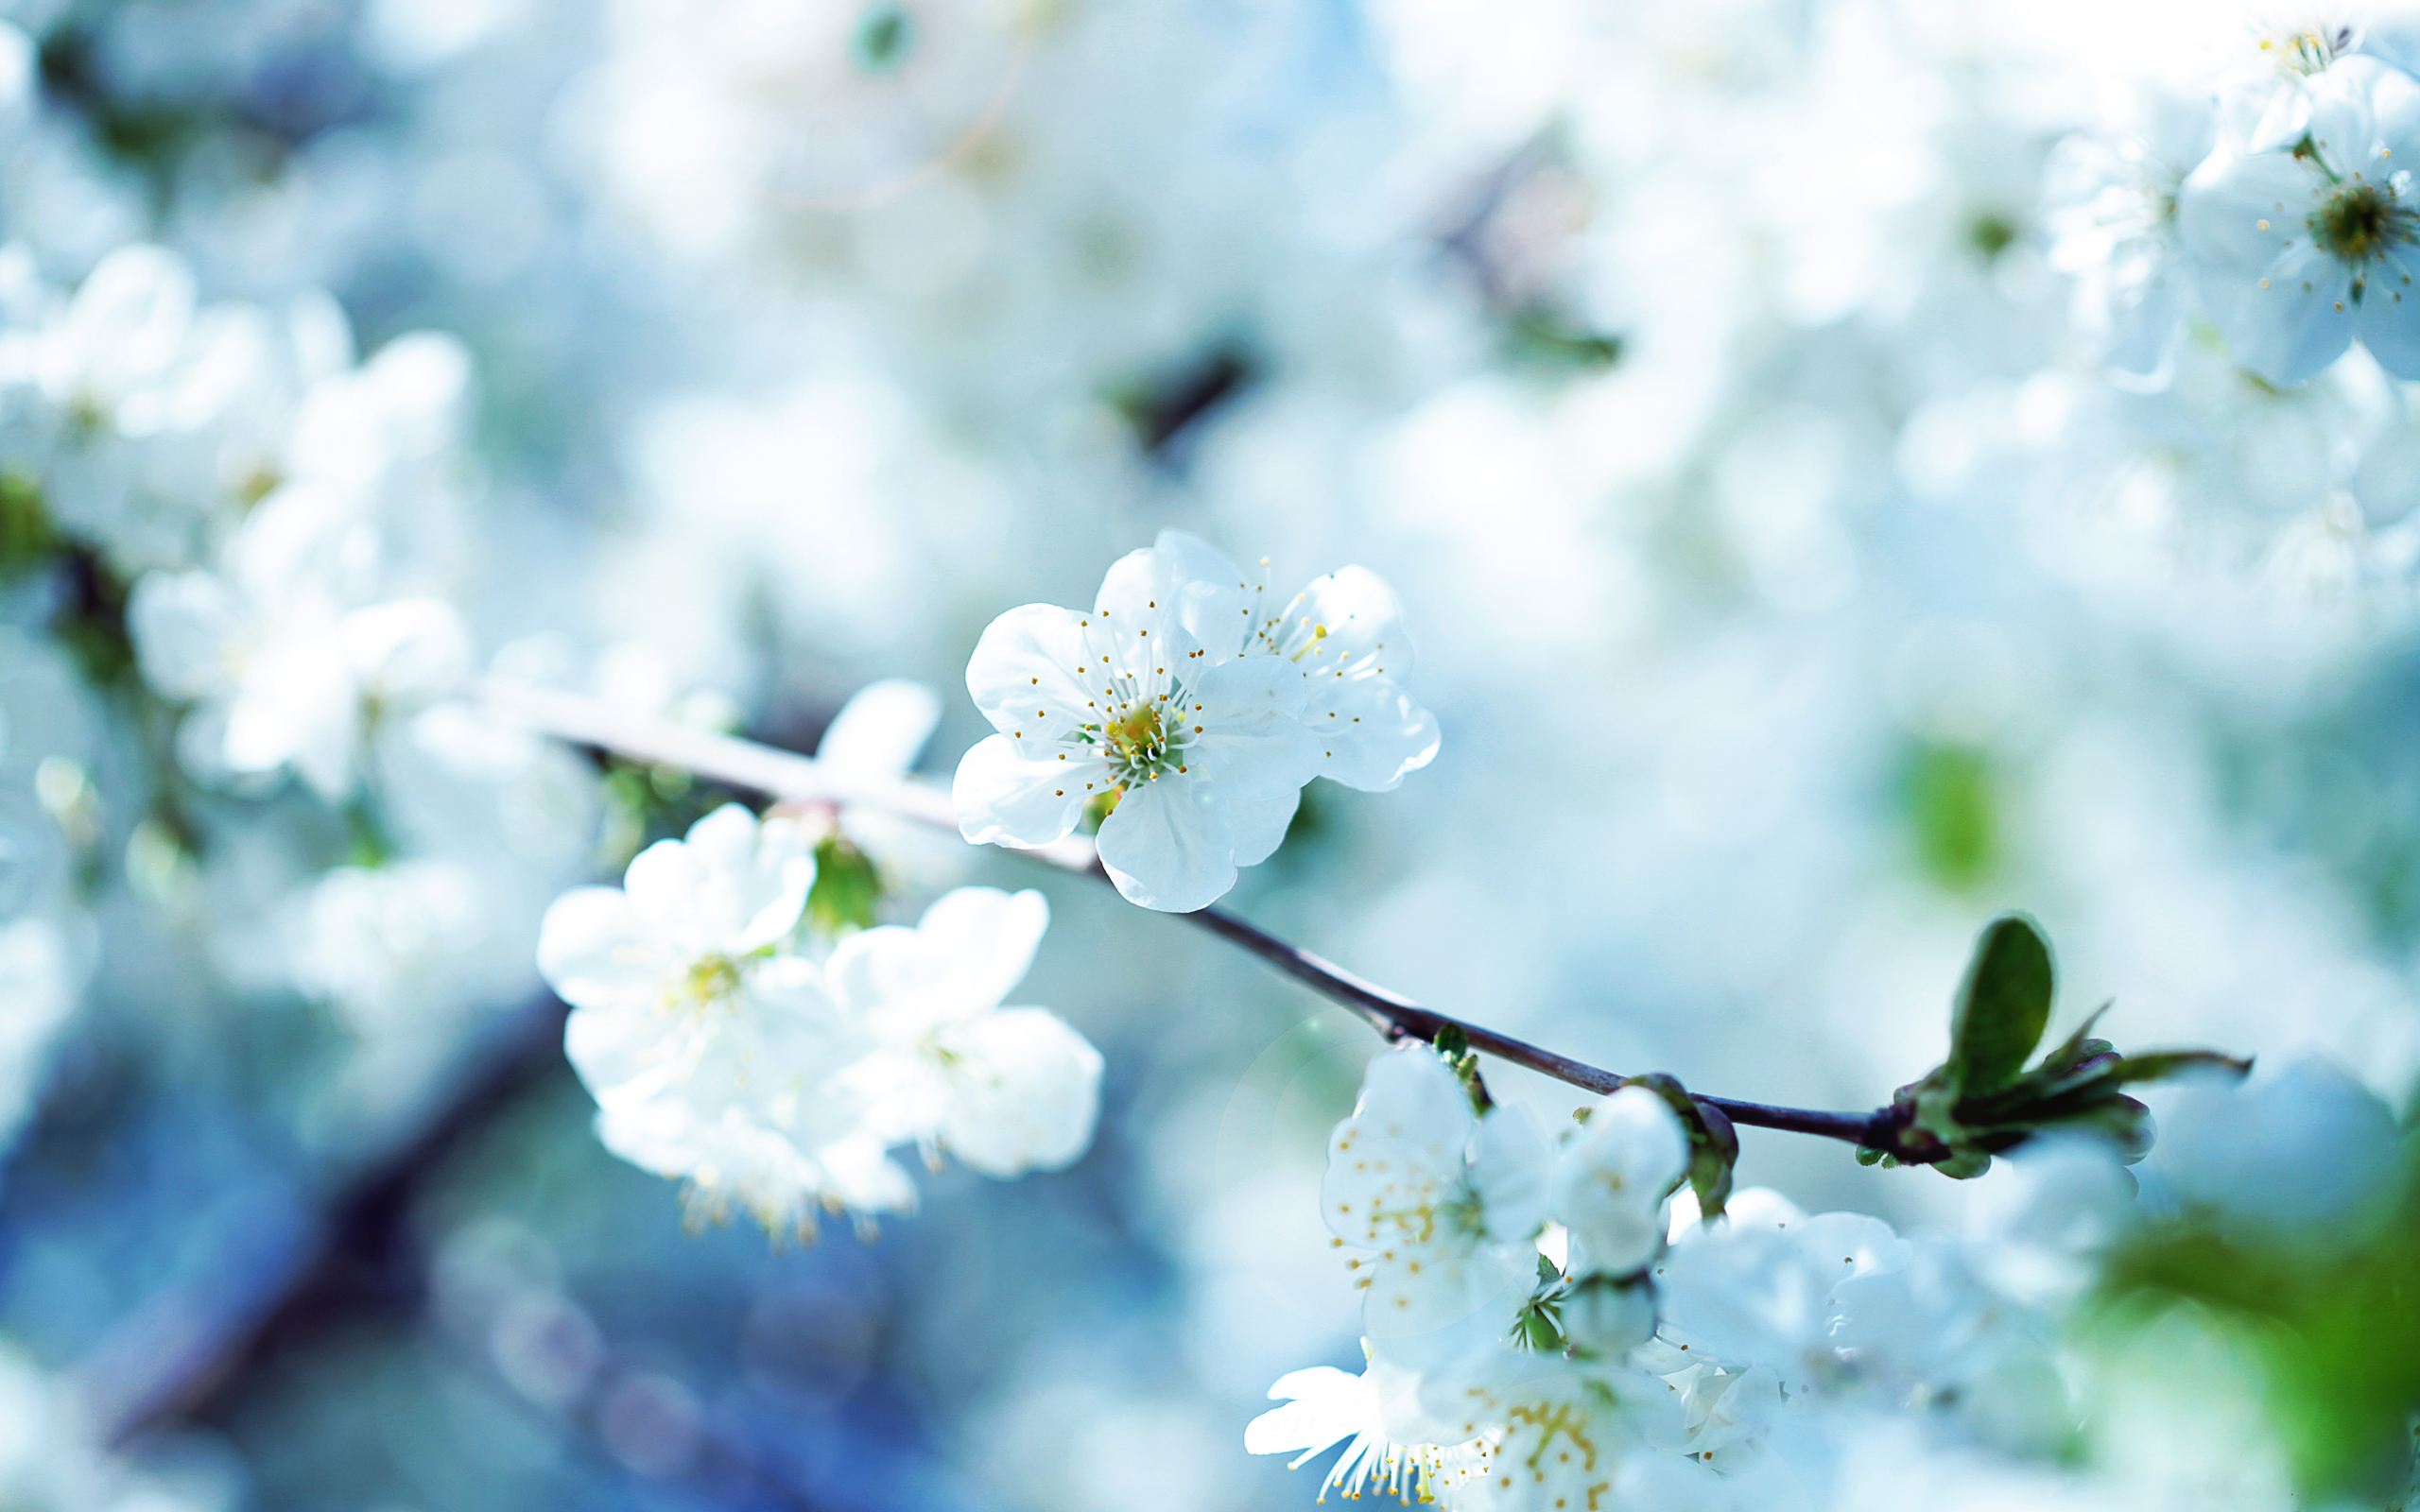 عکس استوک و تصویر استوک با کیفیت شکوفه های بهاری زیبا